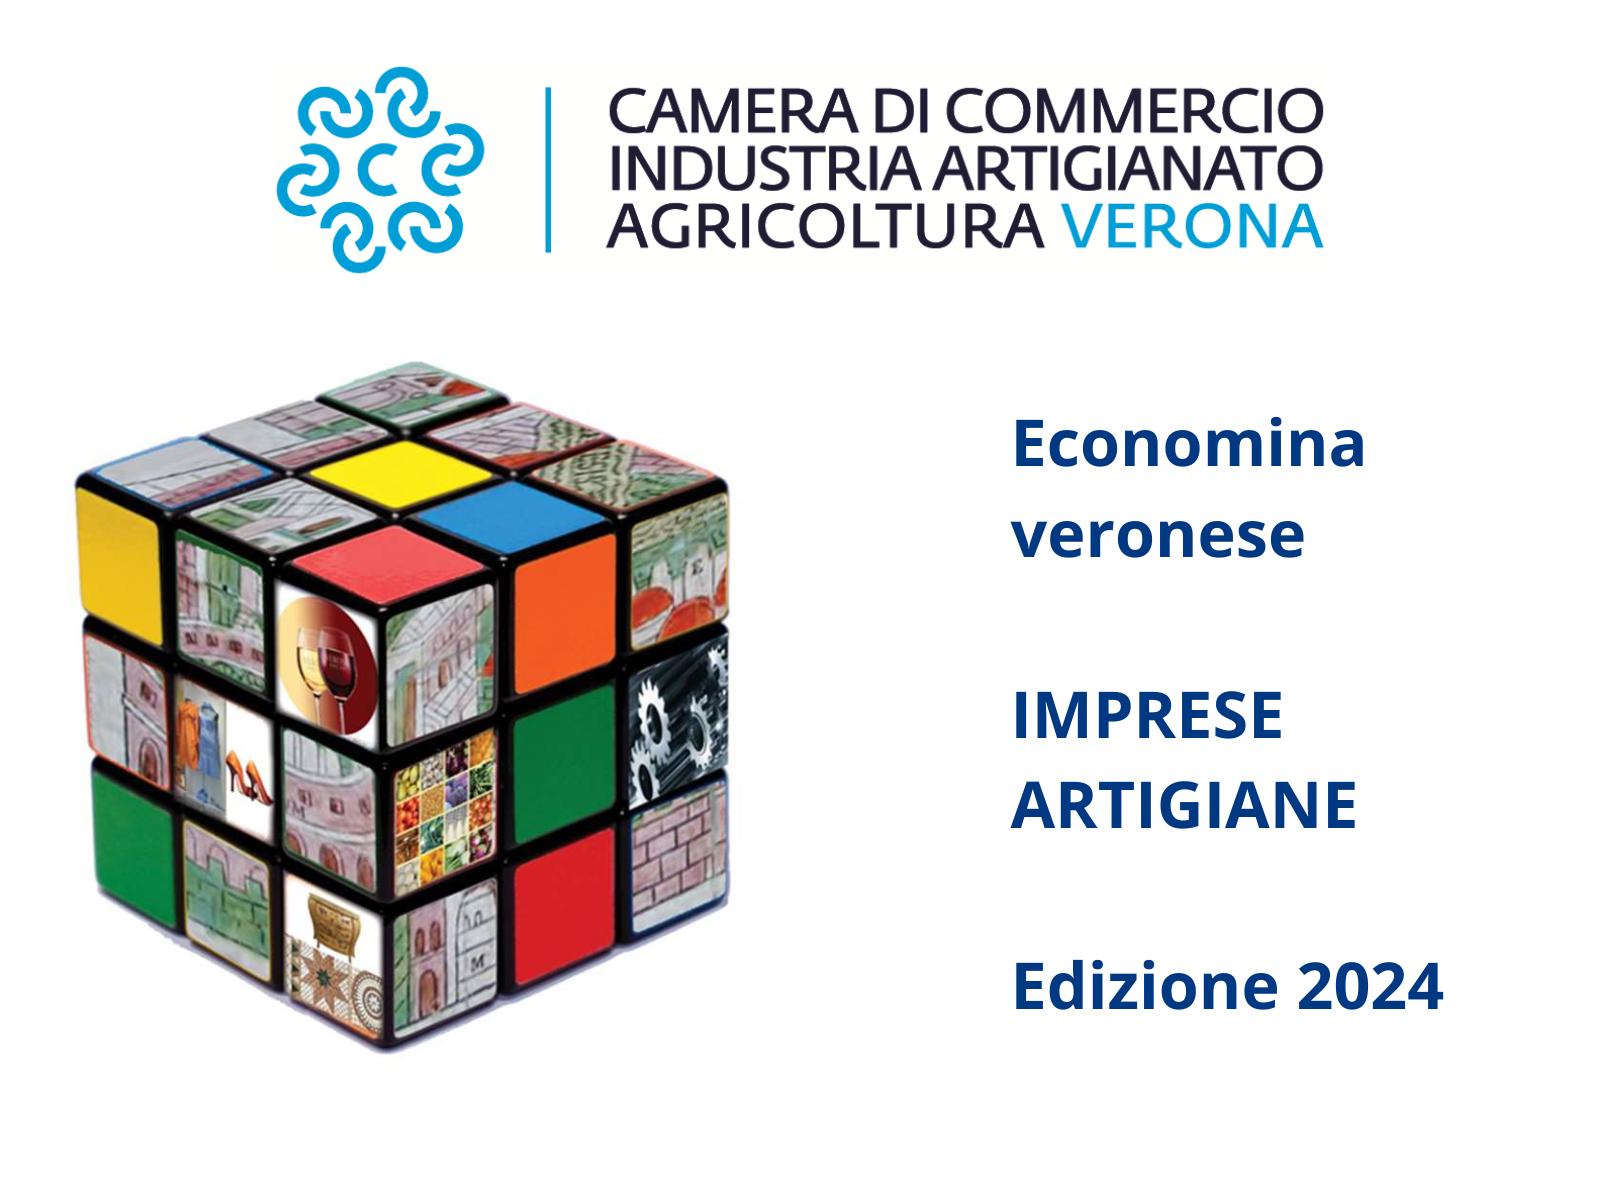 IMPRESE ARTIGIANE - Report 2024 della Camera di Commercio